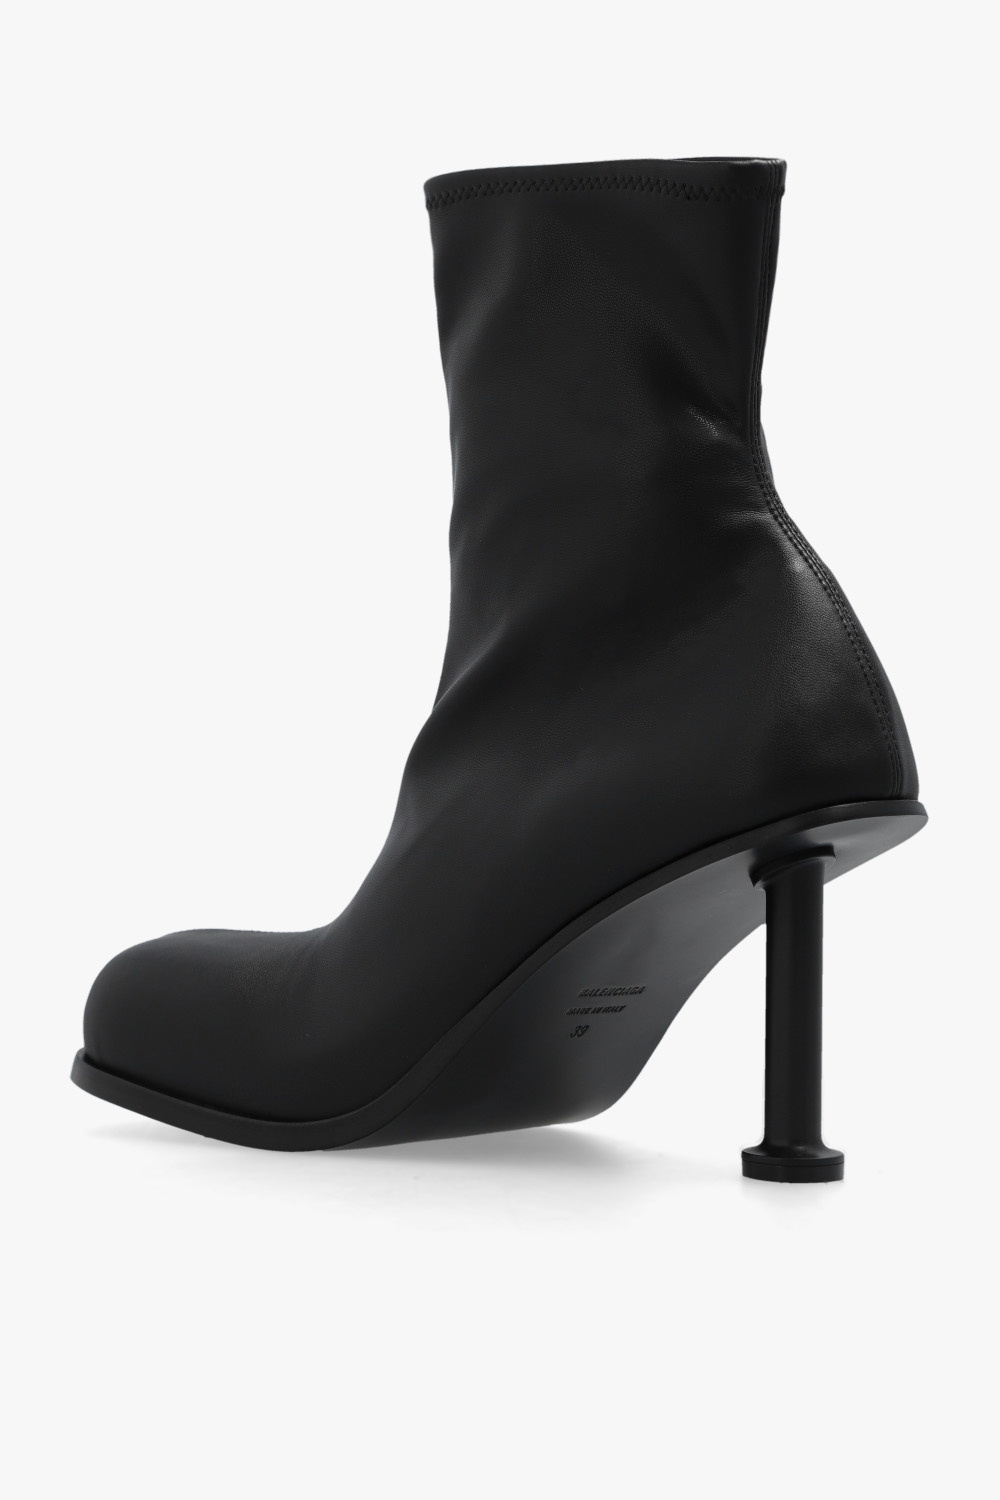 Balenciaga ‘Mallorca’ heeled ankle boots